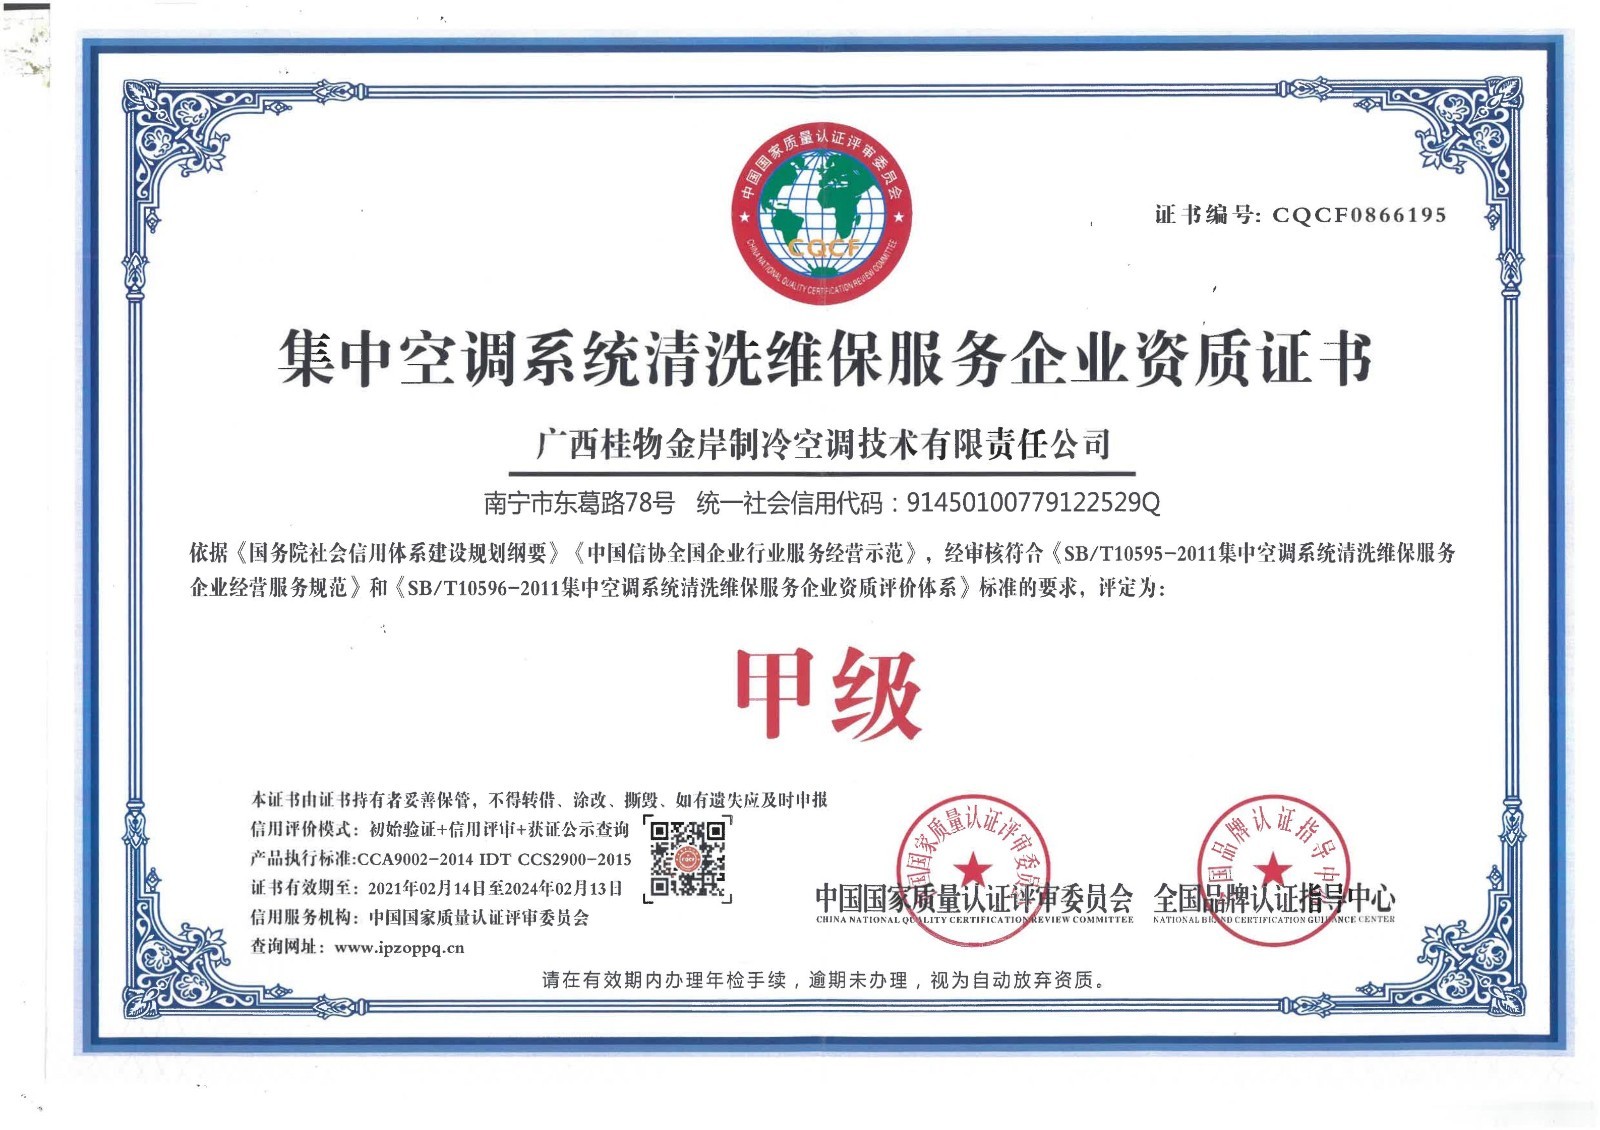 集中空调系统清洗维保服务企业资质证书（甲级）